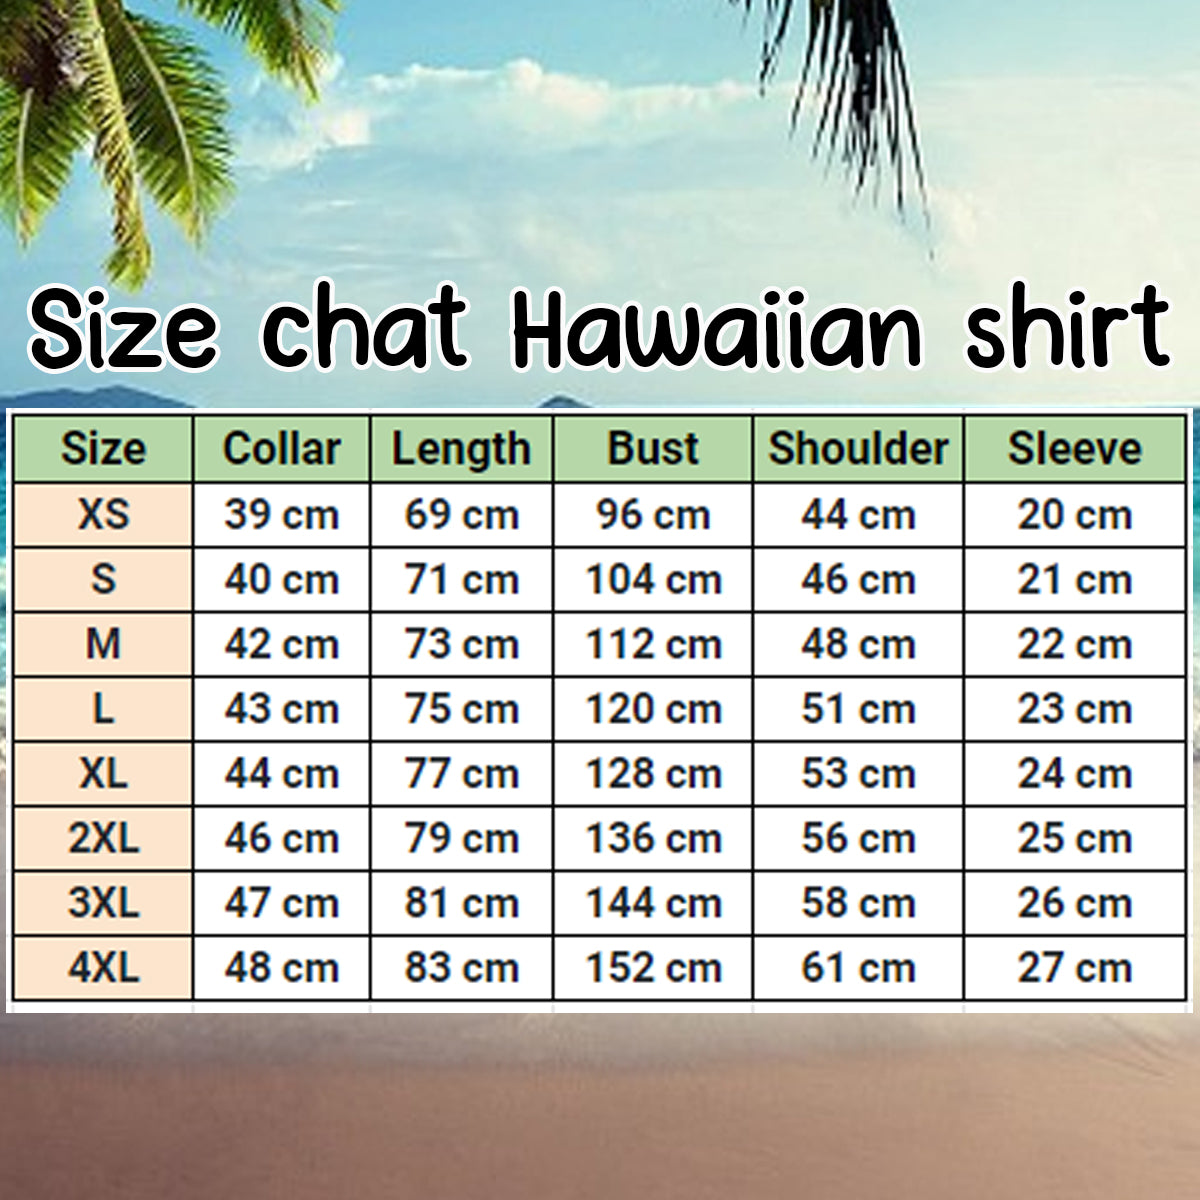 Jack Russell Terrier Hawaiian Shirt/ Flower Dog Short Sleeve Hawaiian Aloha Shirt for Men/ Women/ Gift for summer